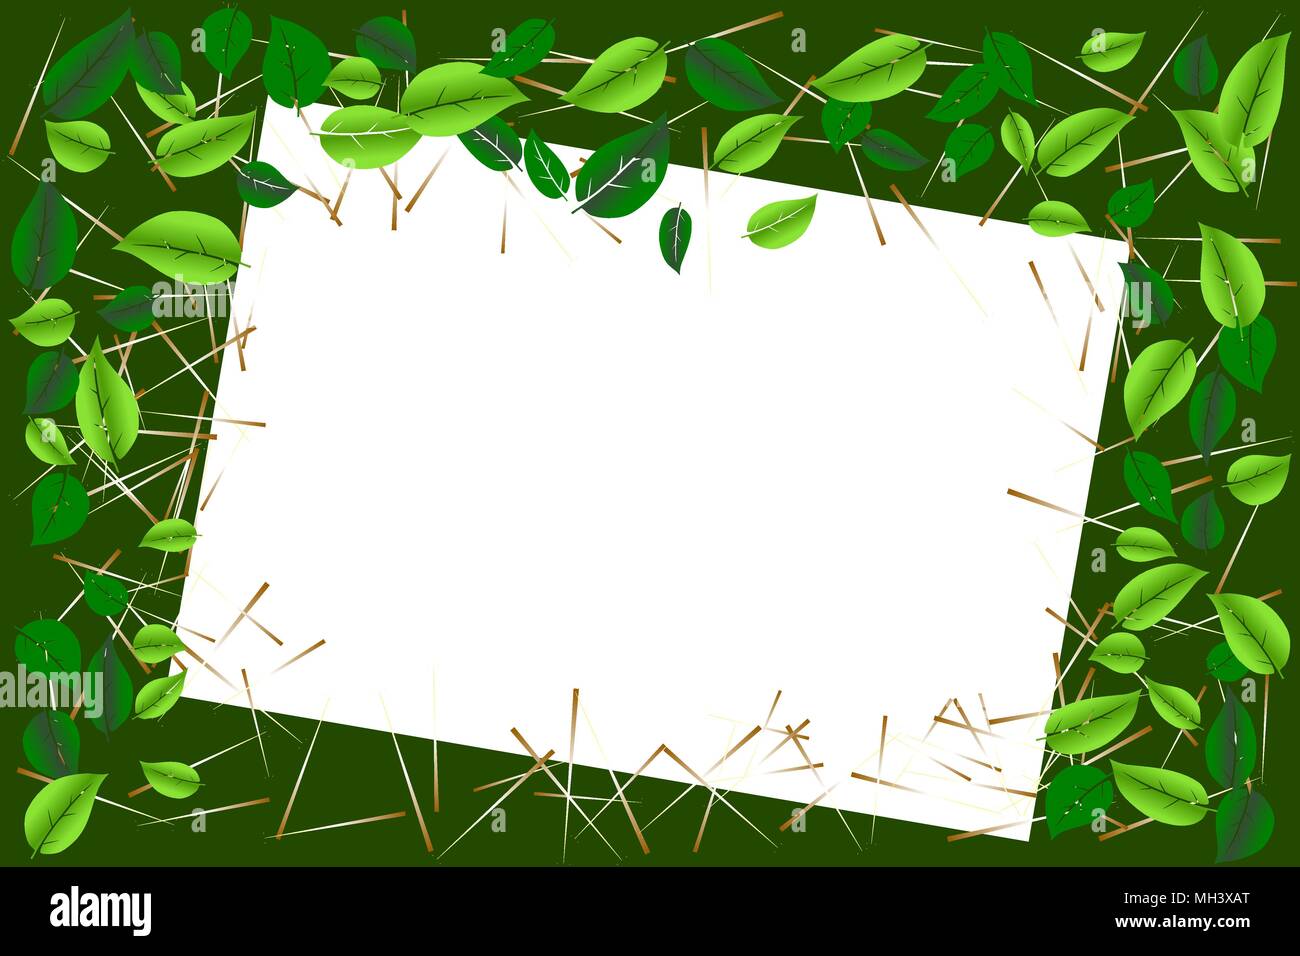 Umweltkonzept. Grüne Blätter Grenze Rahmen mit weiß (transparent) Papier für Text oder Bild. Vector Illustration, EPS 10. Stock Vektor